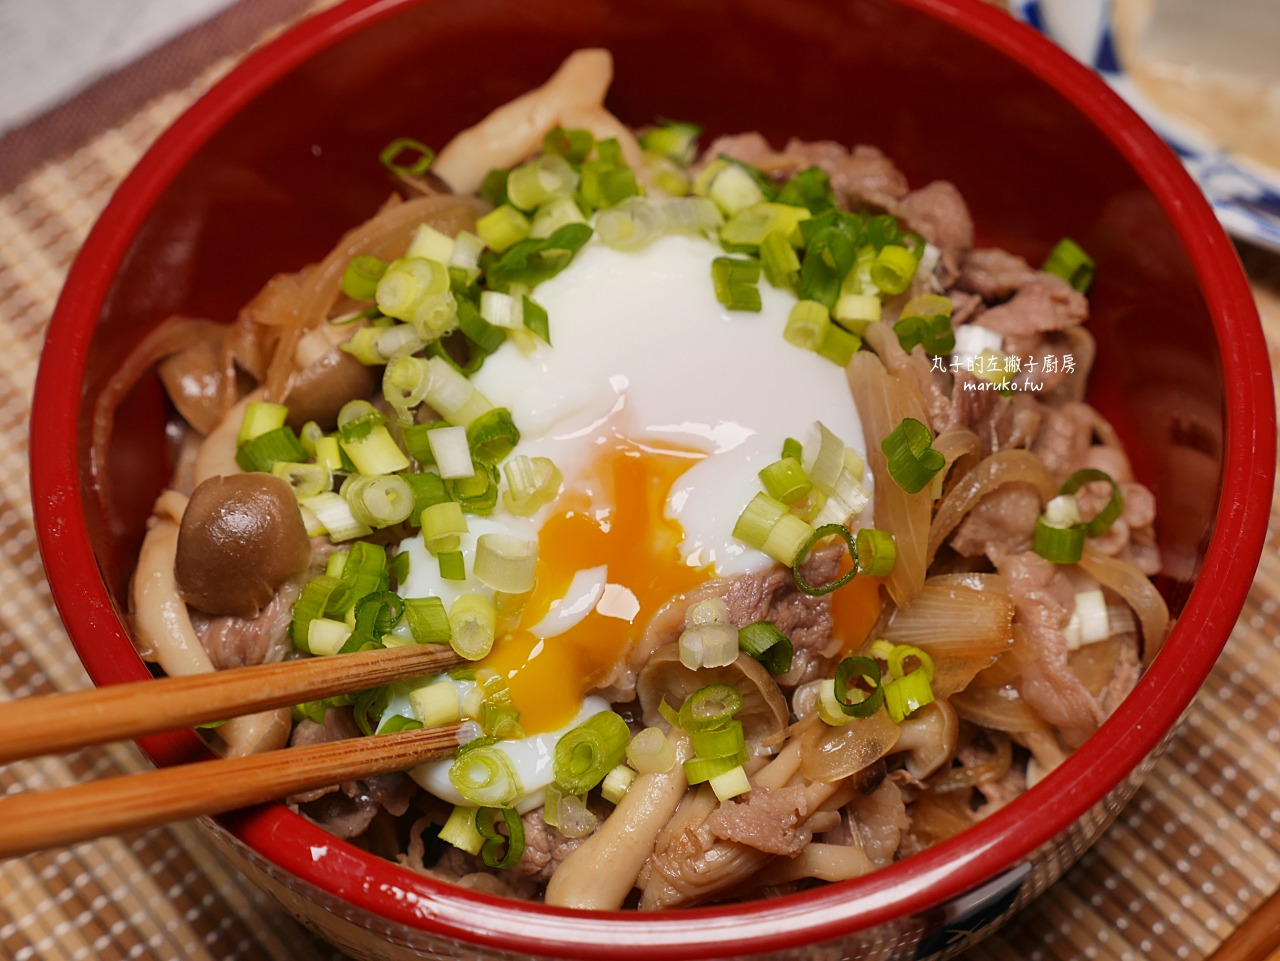 【食譜】牛丼 簡單醬汁做日式牛肉蓋飯 10分鐘上菜 快速晚餐做法 @Maruko與美食有個約會